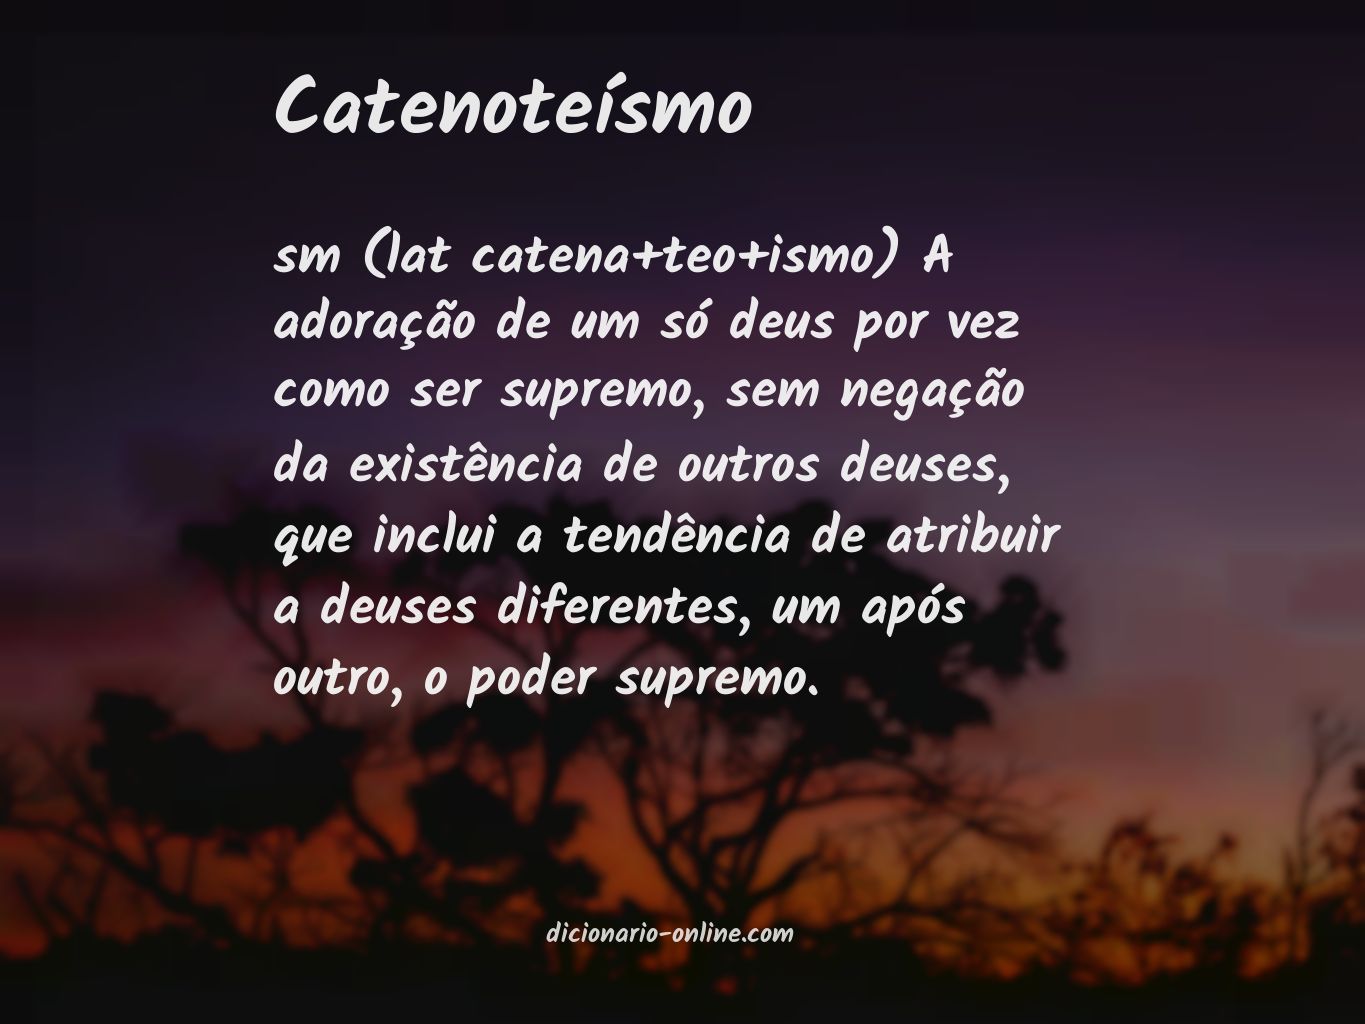 Significado de catenoteísmo